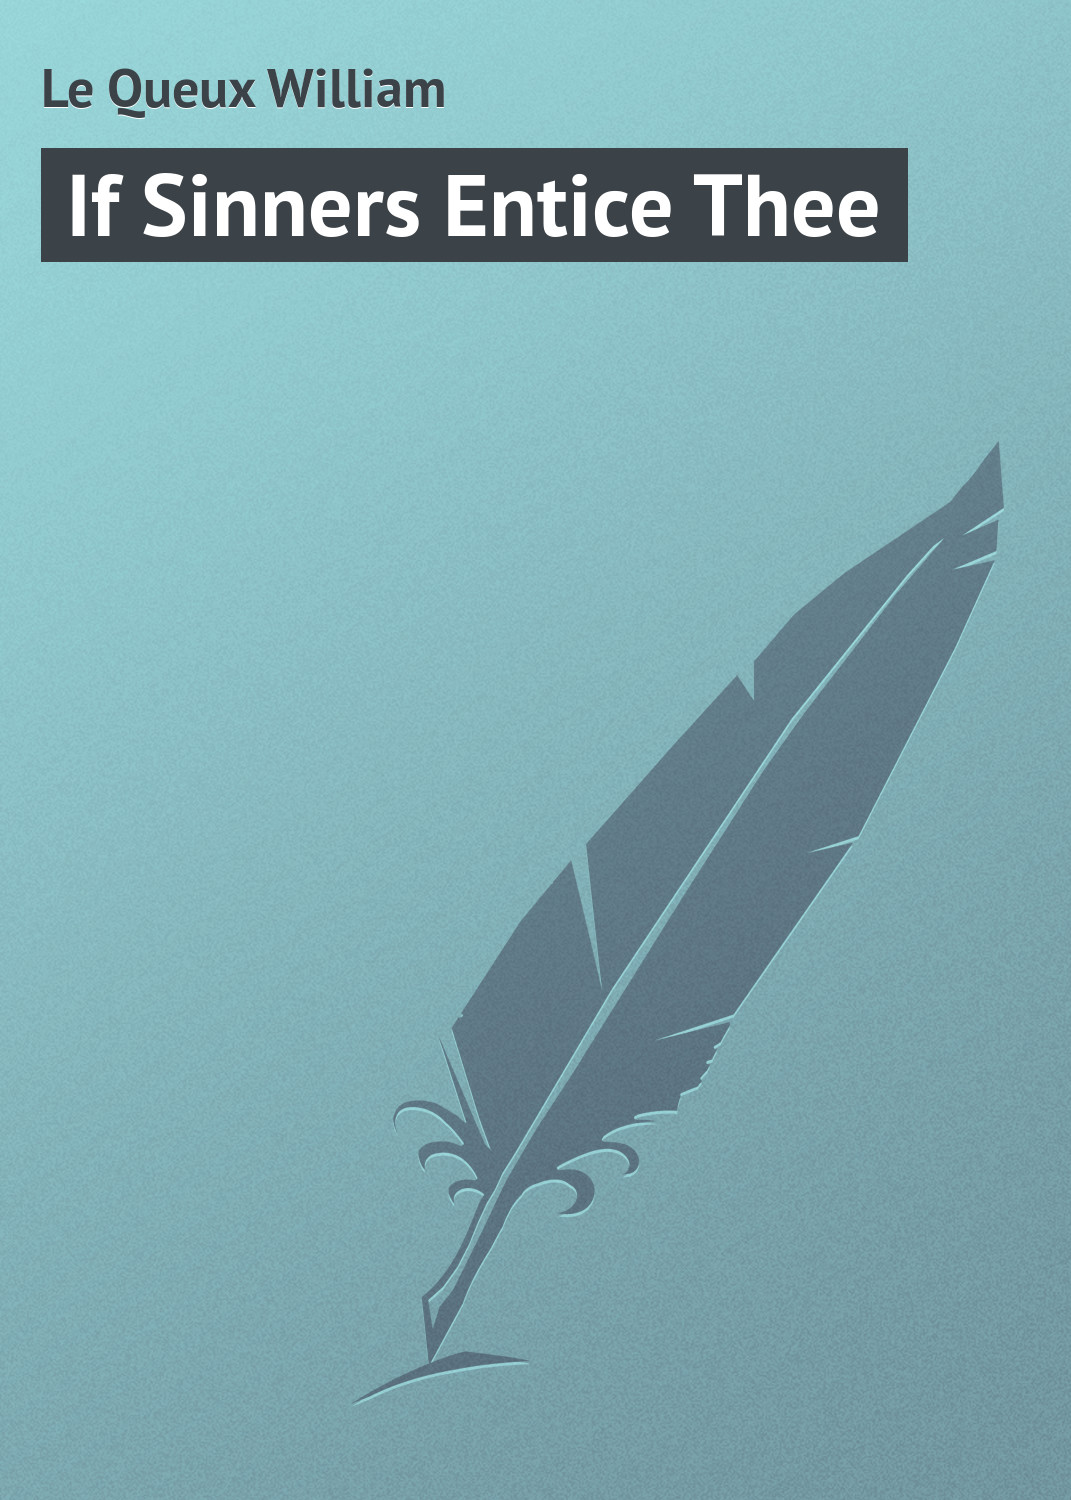 Книга If Sinners Entice Thee из серии , созданная William Le Queux, может относится к жанру Зарубежная классика. Стоимость электронной книги If Sinners Entice Thee с идентификатором 23155083 составляет 5.99 руб.